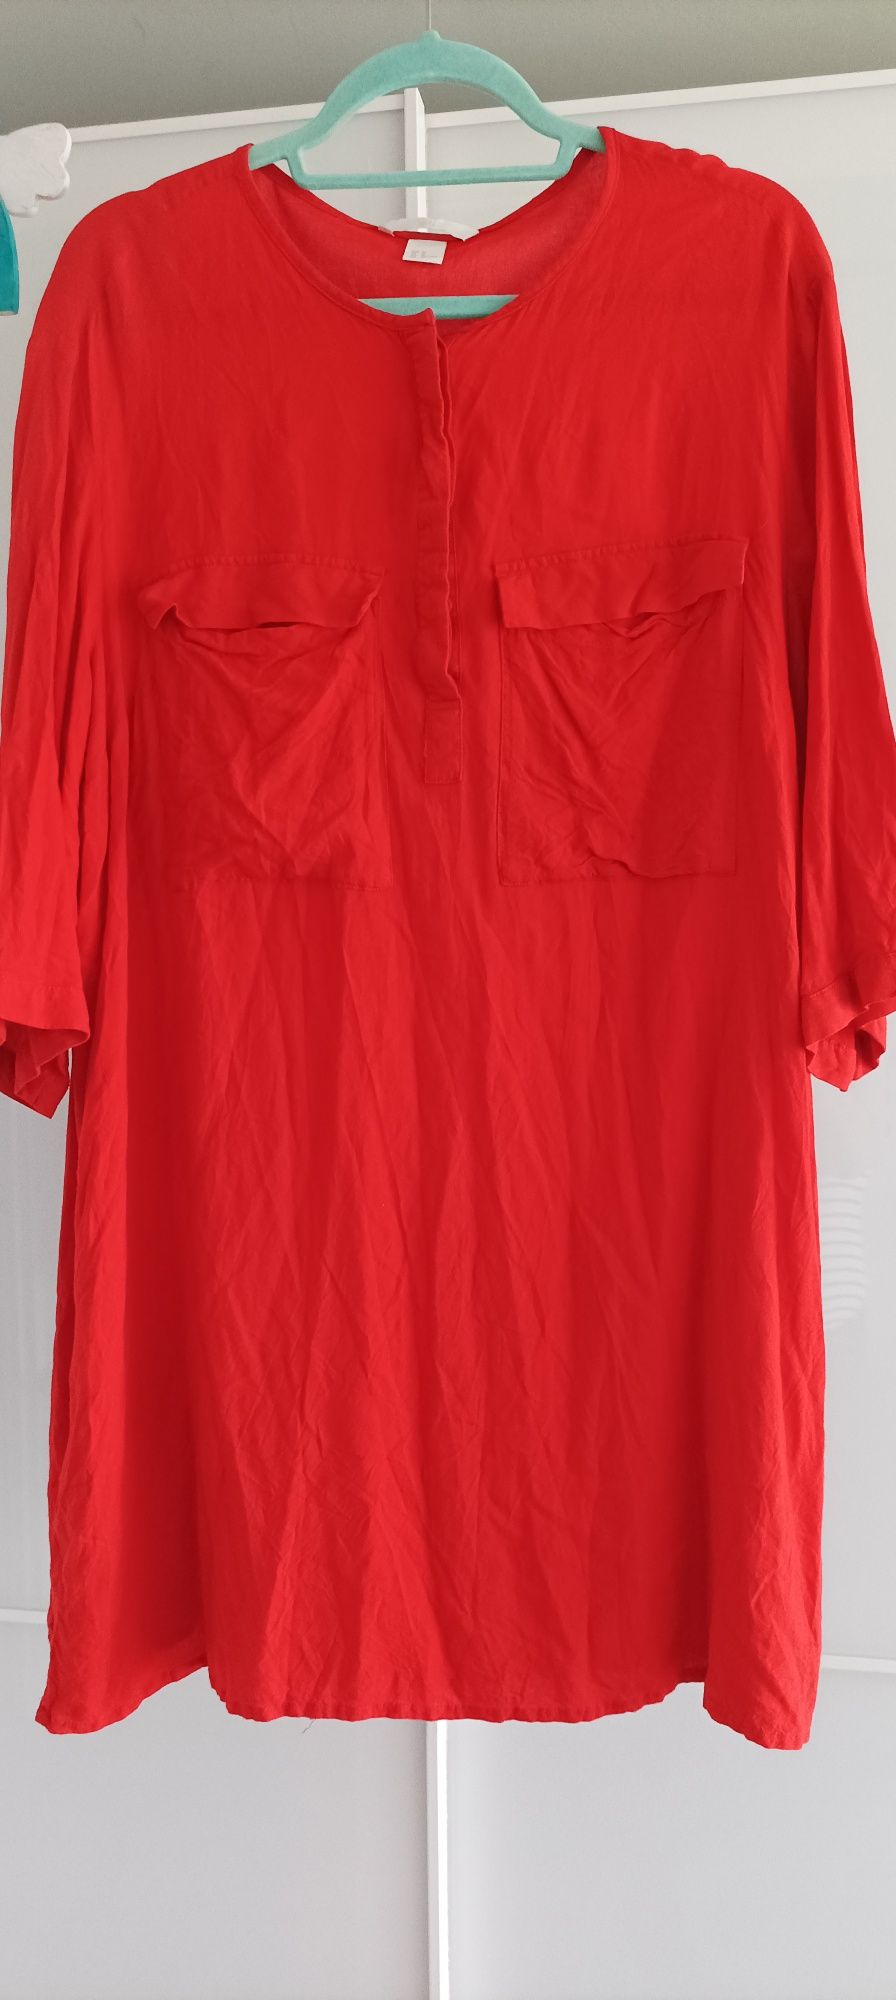 H&M koszula tunika pomarańczowa roz 44/46